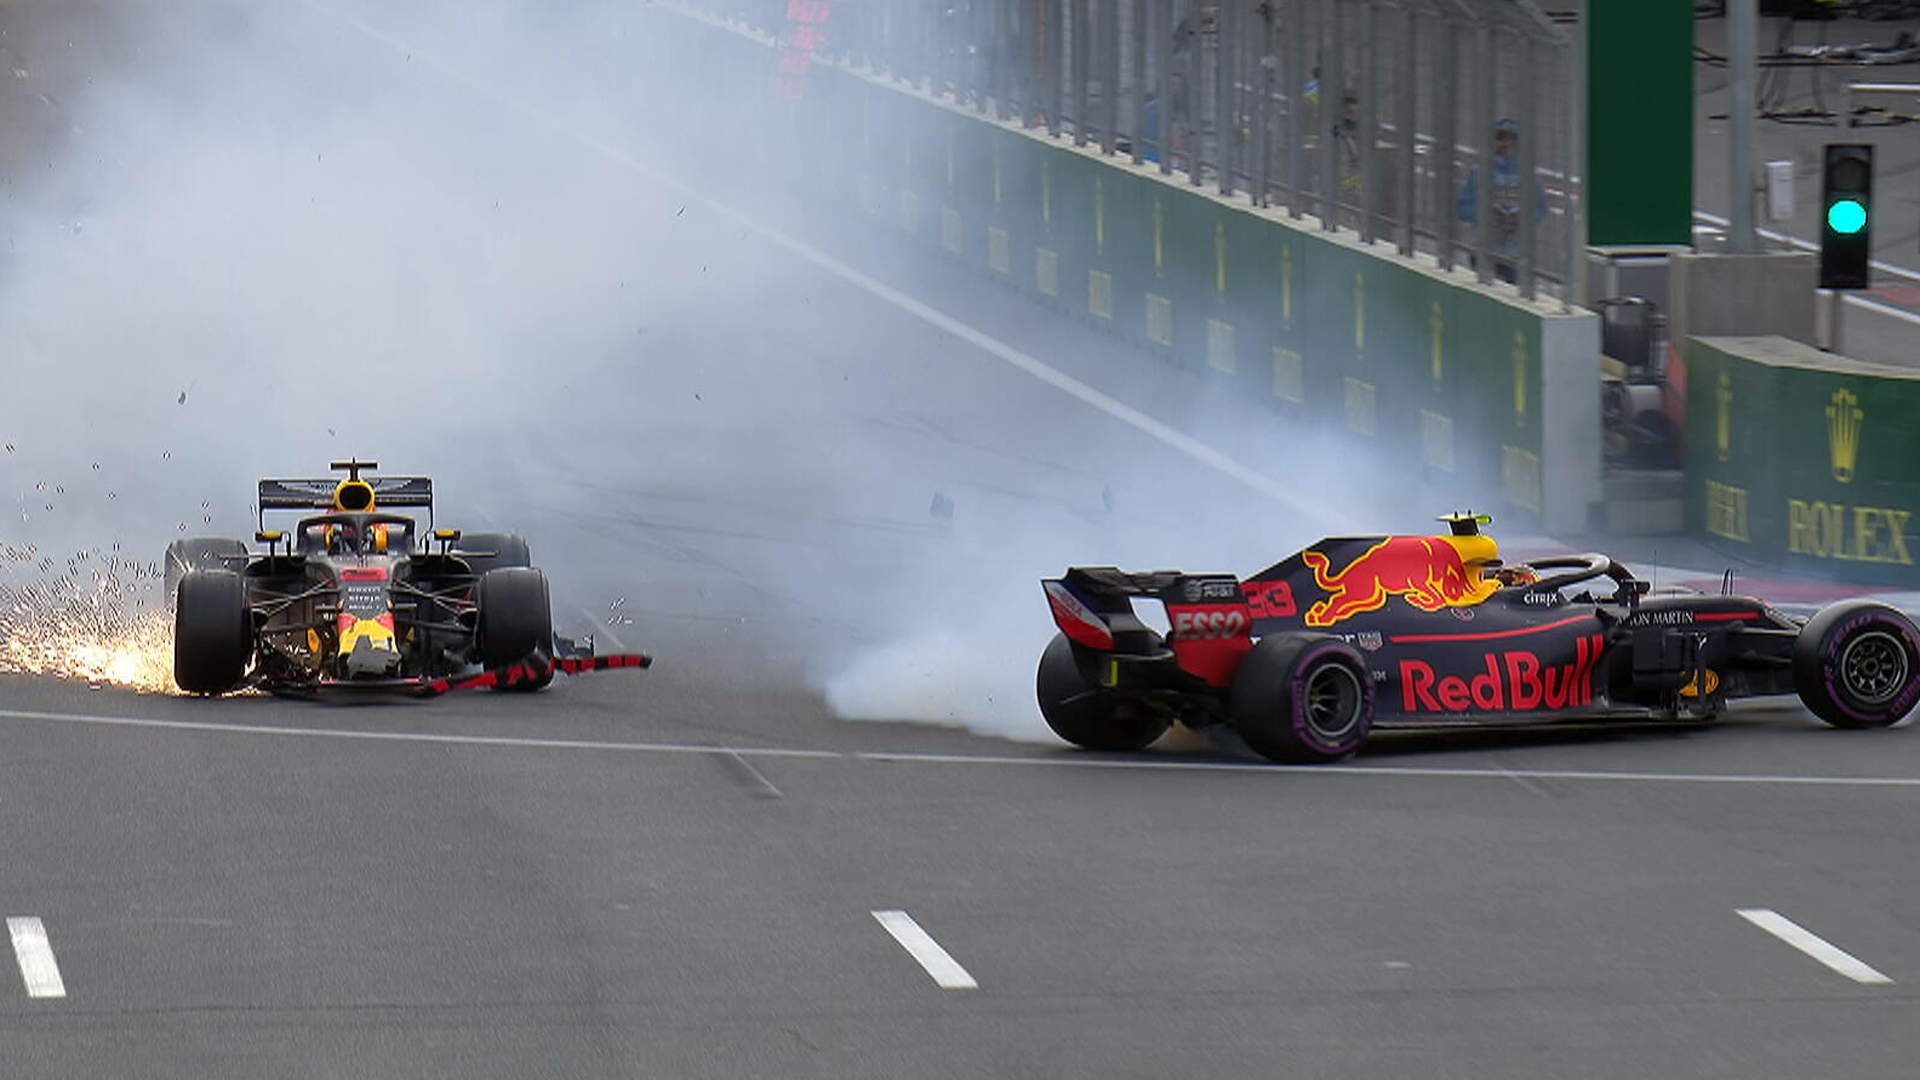 Tabrakan antara kedua pebalap Red Bull di Baku, Azerbaijan. (Formula 1)